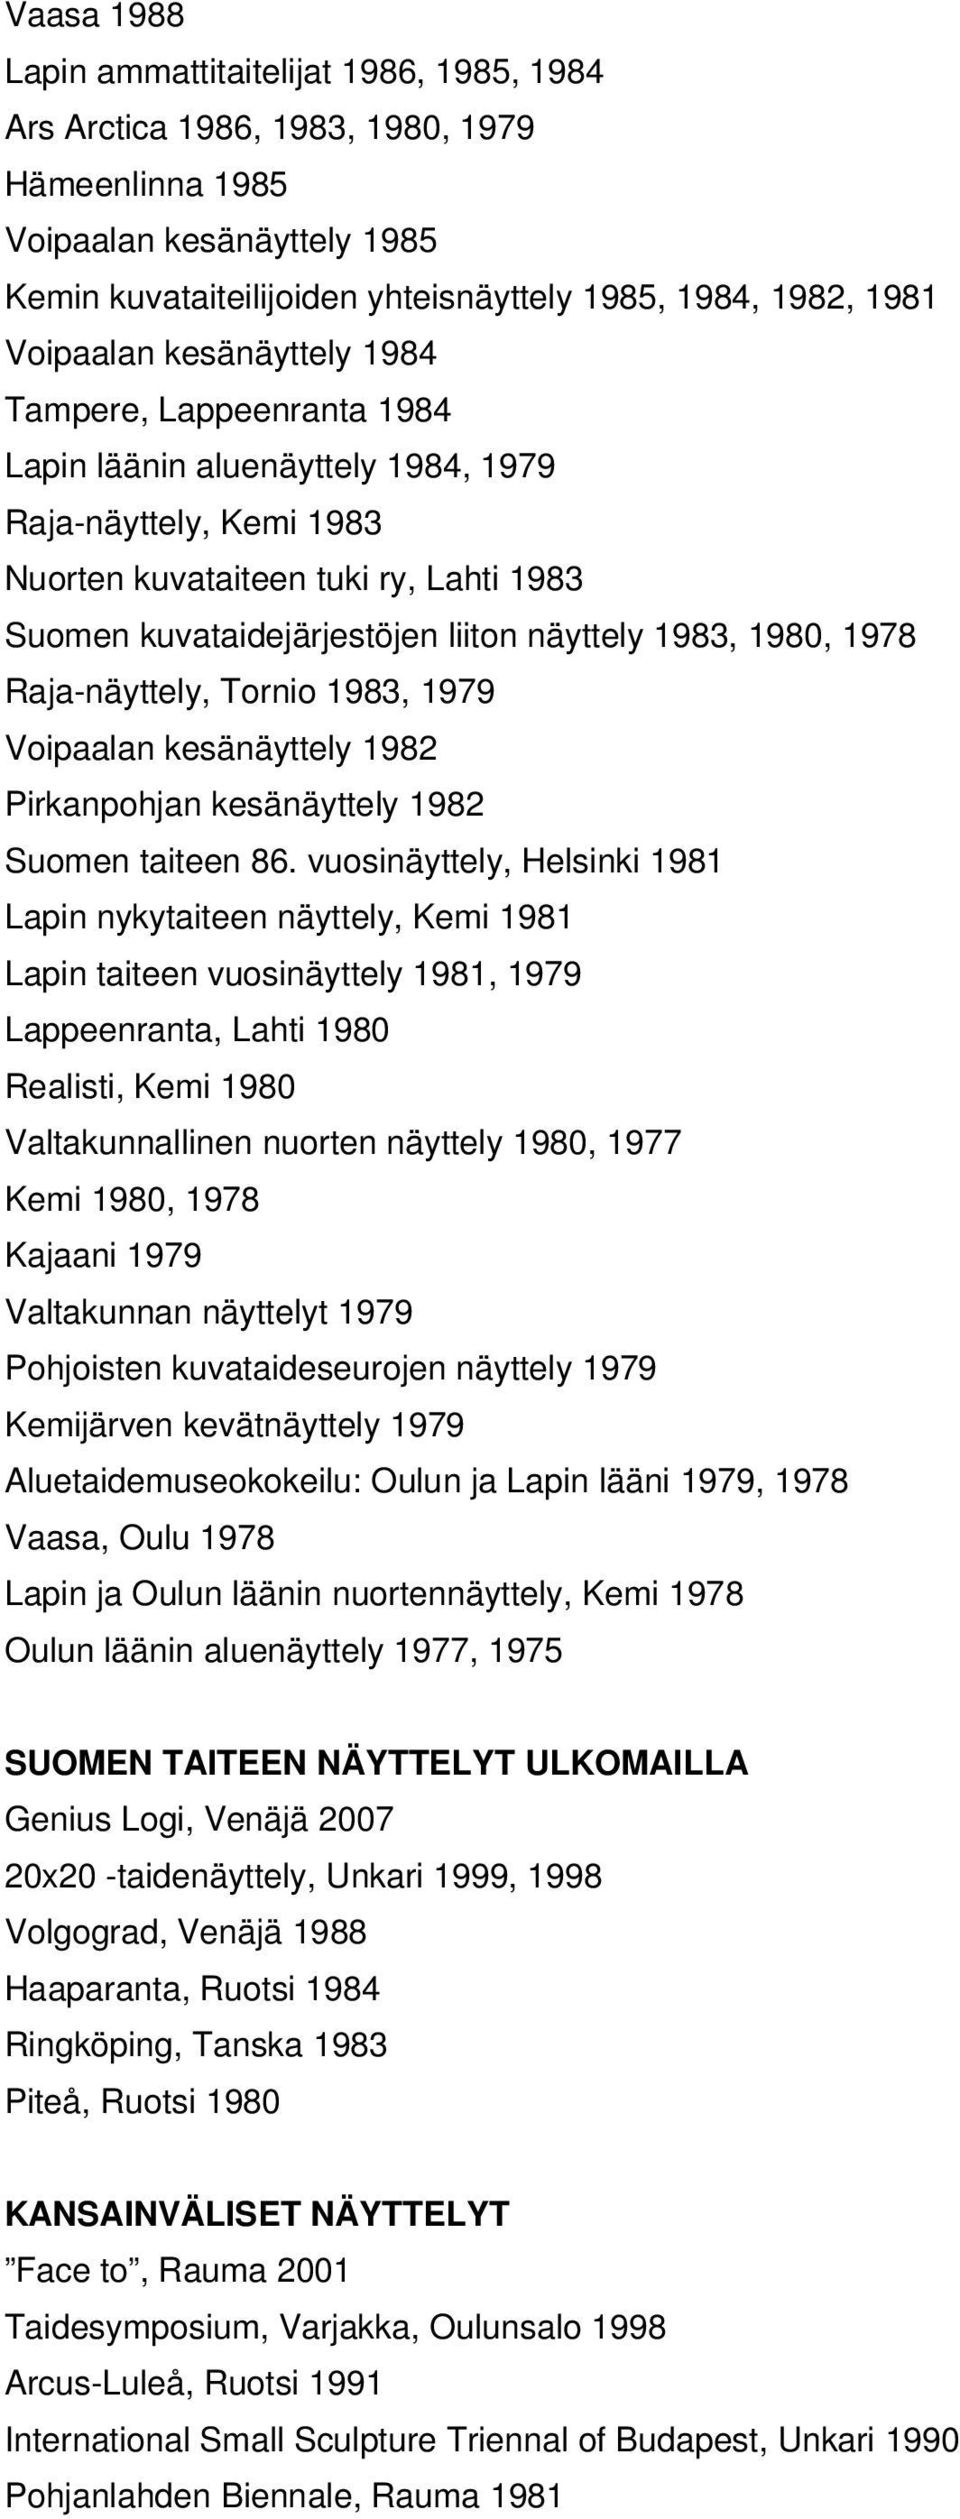 näyttely 1983, 1980, 1978 Raja-näyttely, Tornio 1983, 1979 Voipaalan kesänäyttely 1982 Pirkanpohjan kesänäyttely 1982 Suomen taiteen 86.